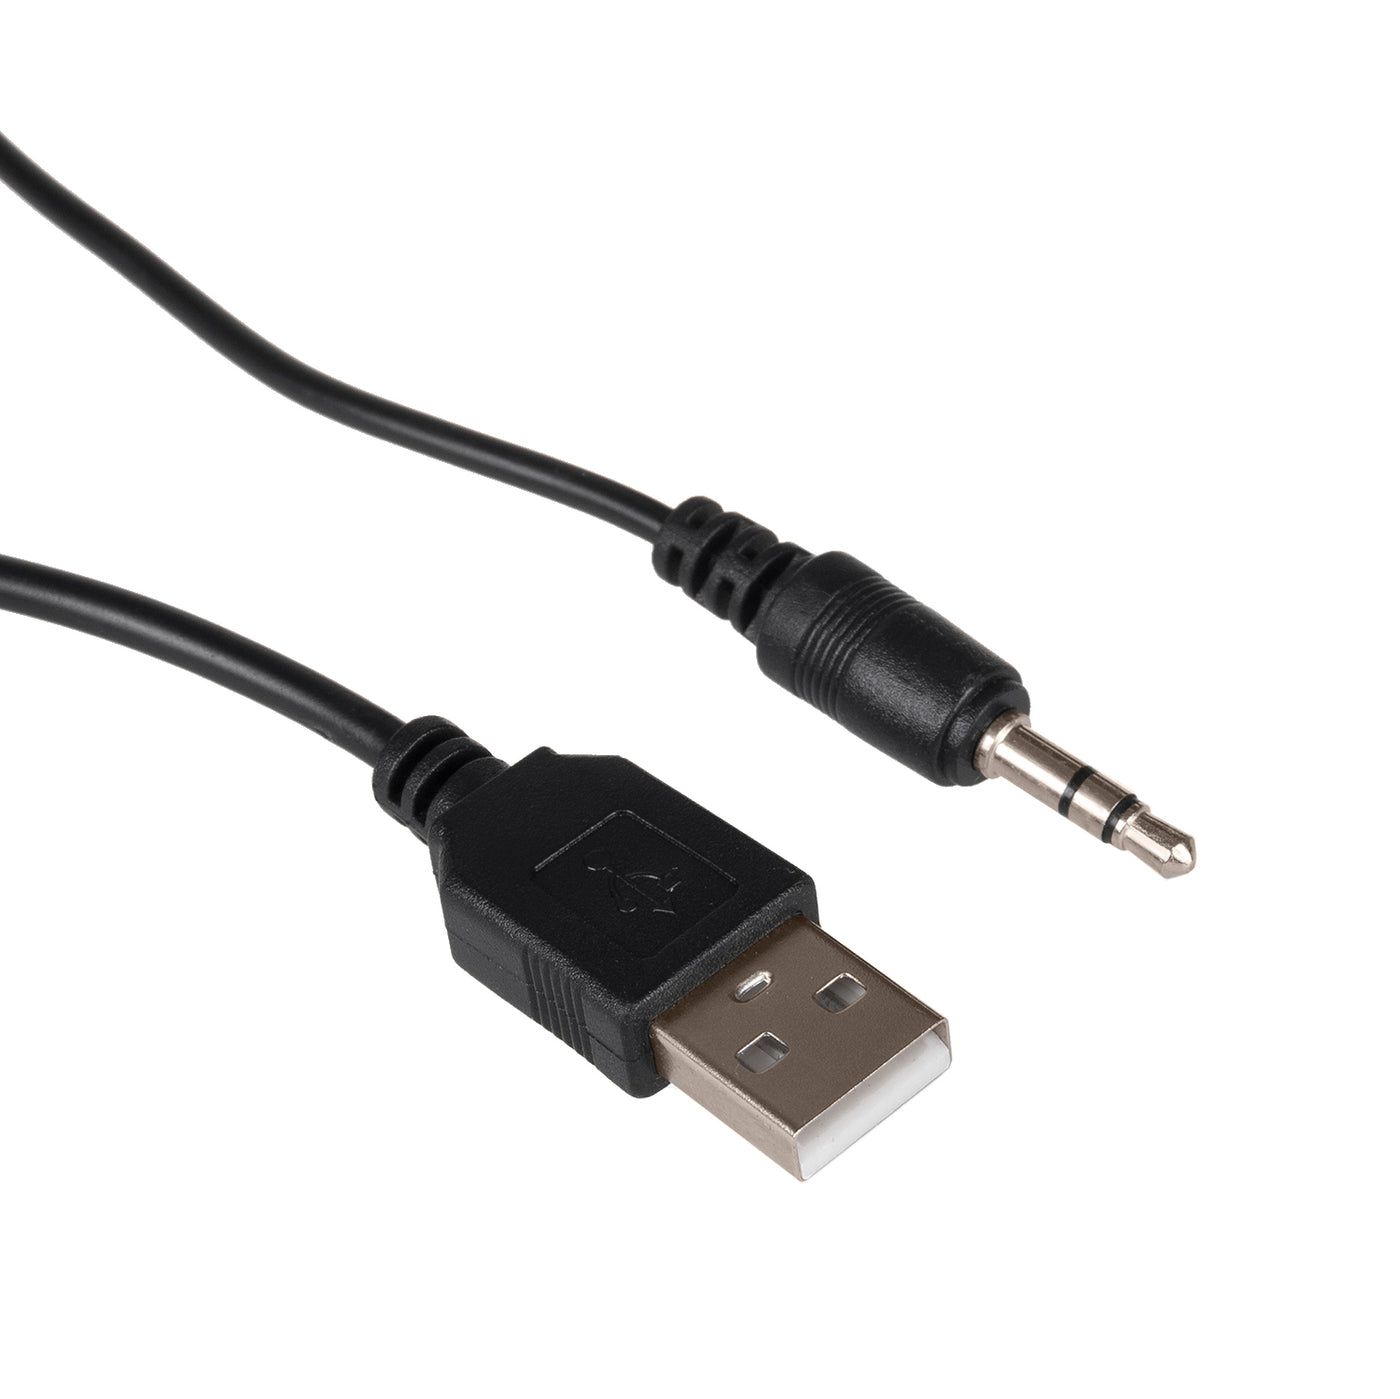 Zestaw głośników Bluetooth 2.1 Audiocore AC910 radio FM, wejście kart TF, AUX, zasilanie USB